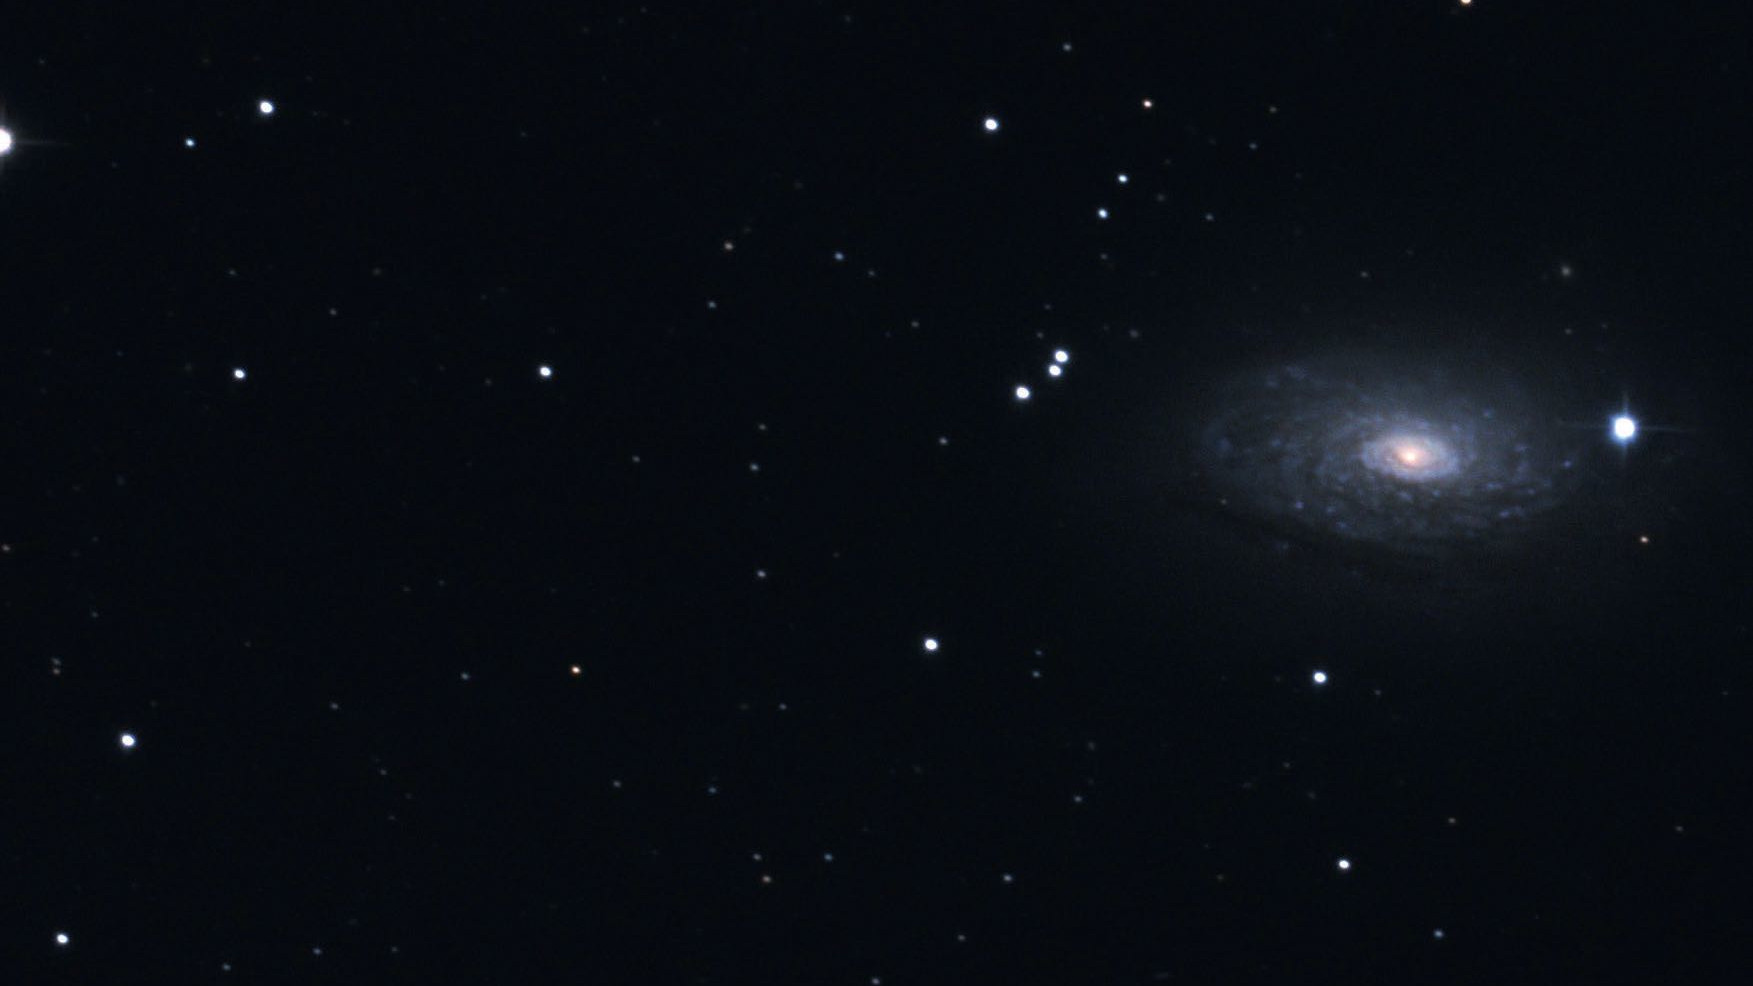 I kikaren nästan en dubbelstjärna:
Foton avslöjar M 63:s galaxkaraktär.
Marcus Degenkolbe